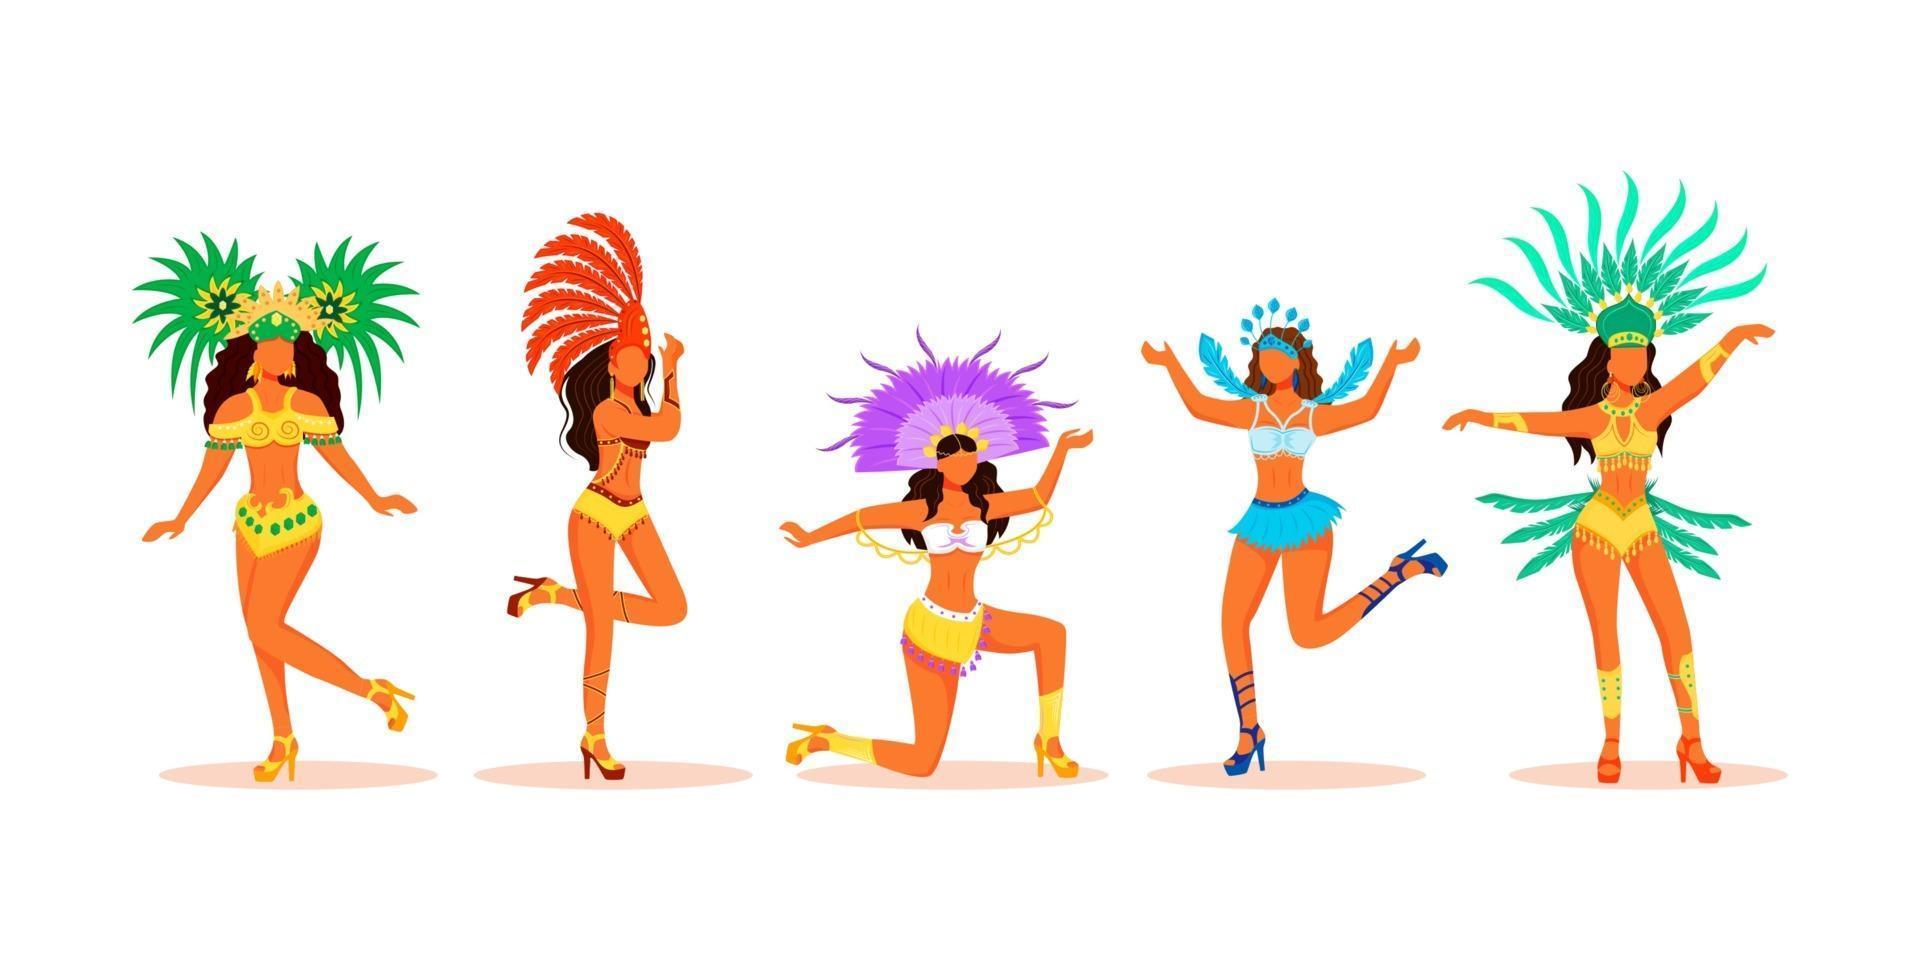 Conjunto de caracteres sin rostro de vector de color plano de bailarines de carnaval de Brasil. damas latinas en disfraces de carnaval. Mujeres en trajes festivos con tocados flambotantes ilustraciones de dibujos animados sobre fondo blanco.